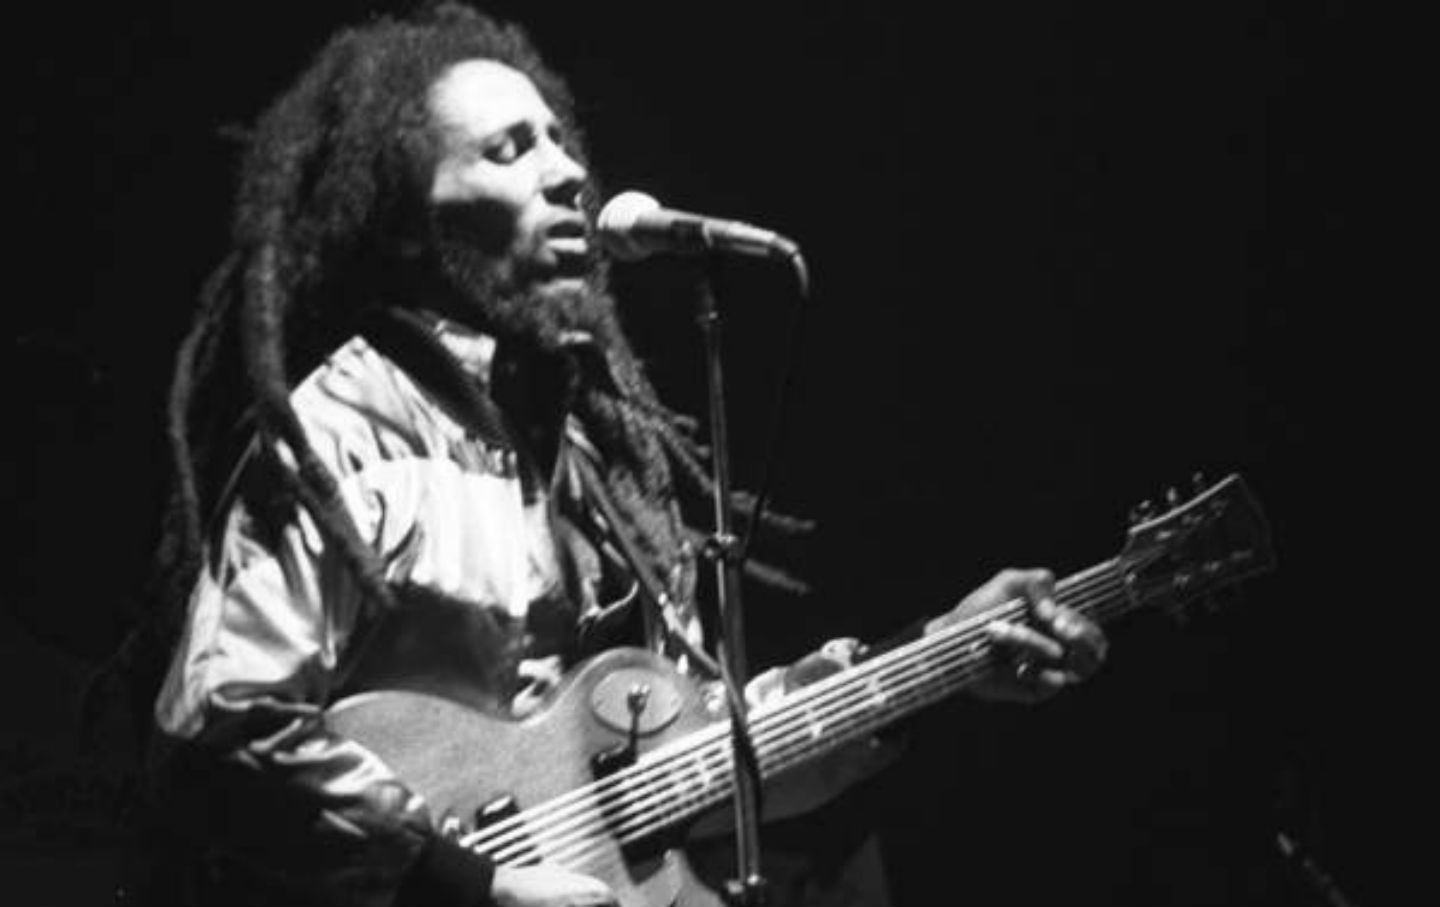 May 11, 1981: Bob Marley Dies